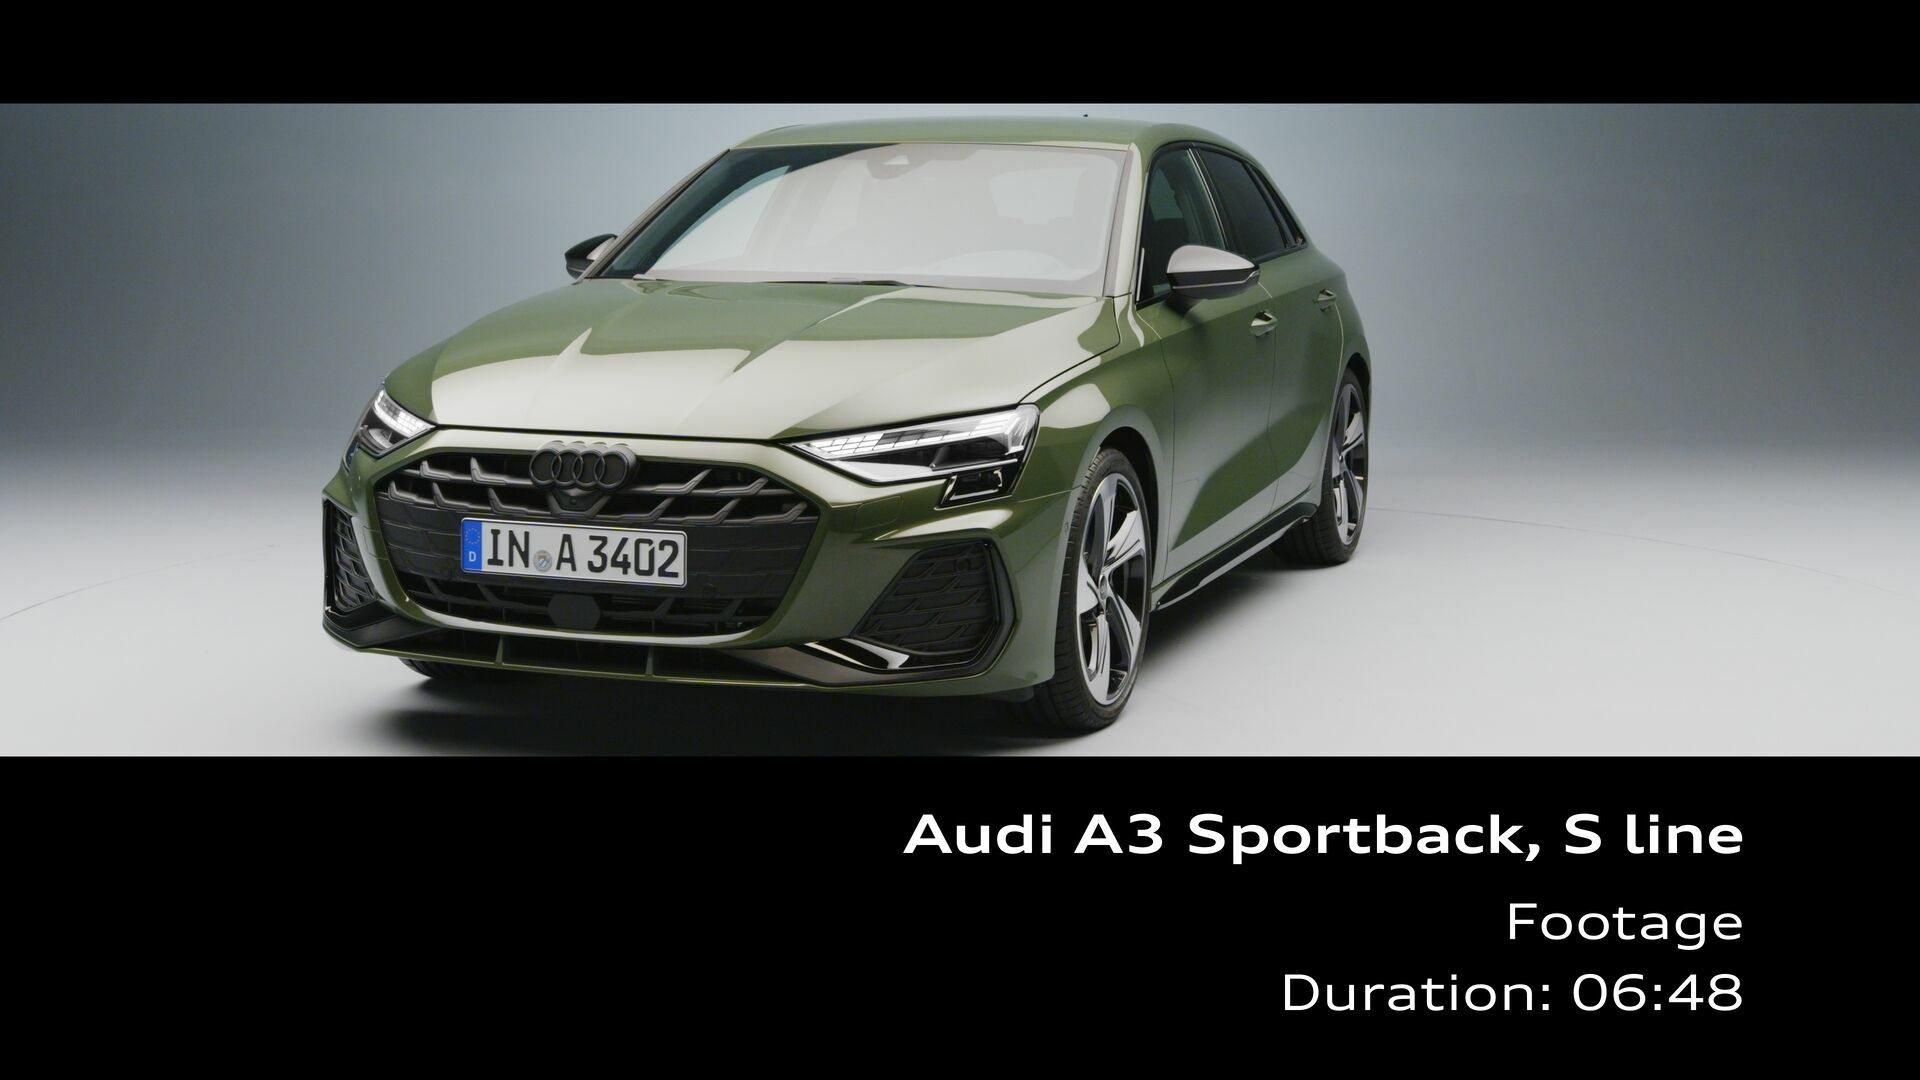 Audi A3 Sportback S line – Footage (Studio)